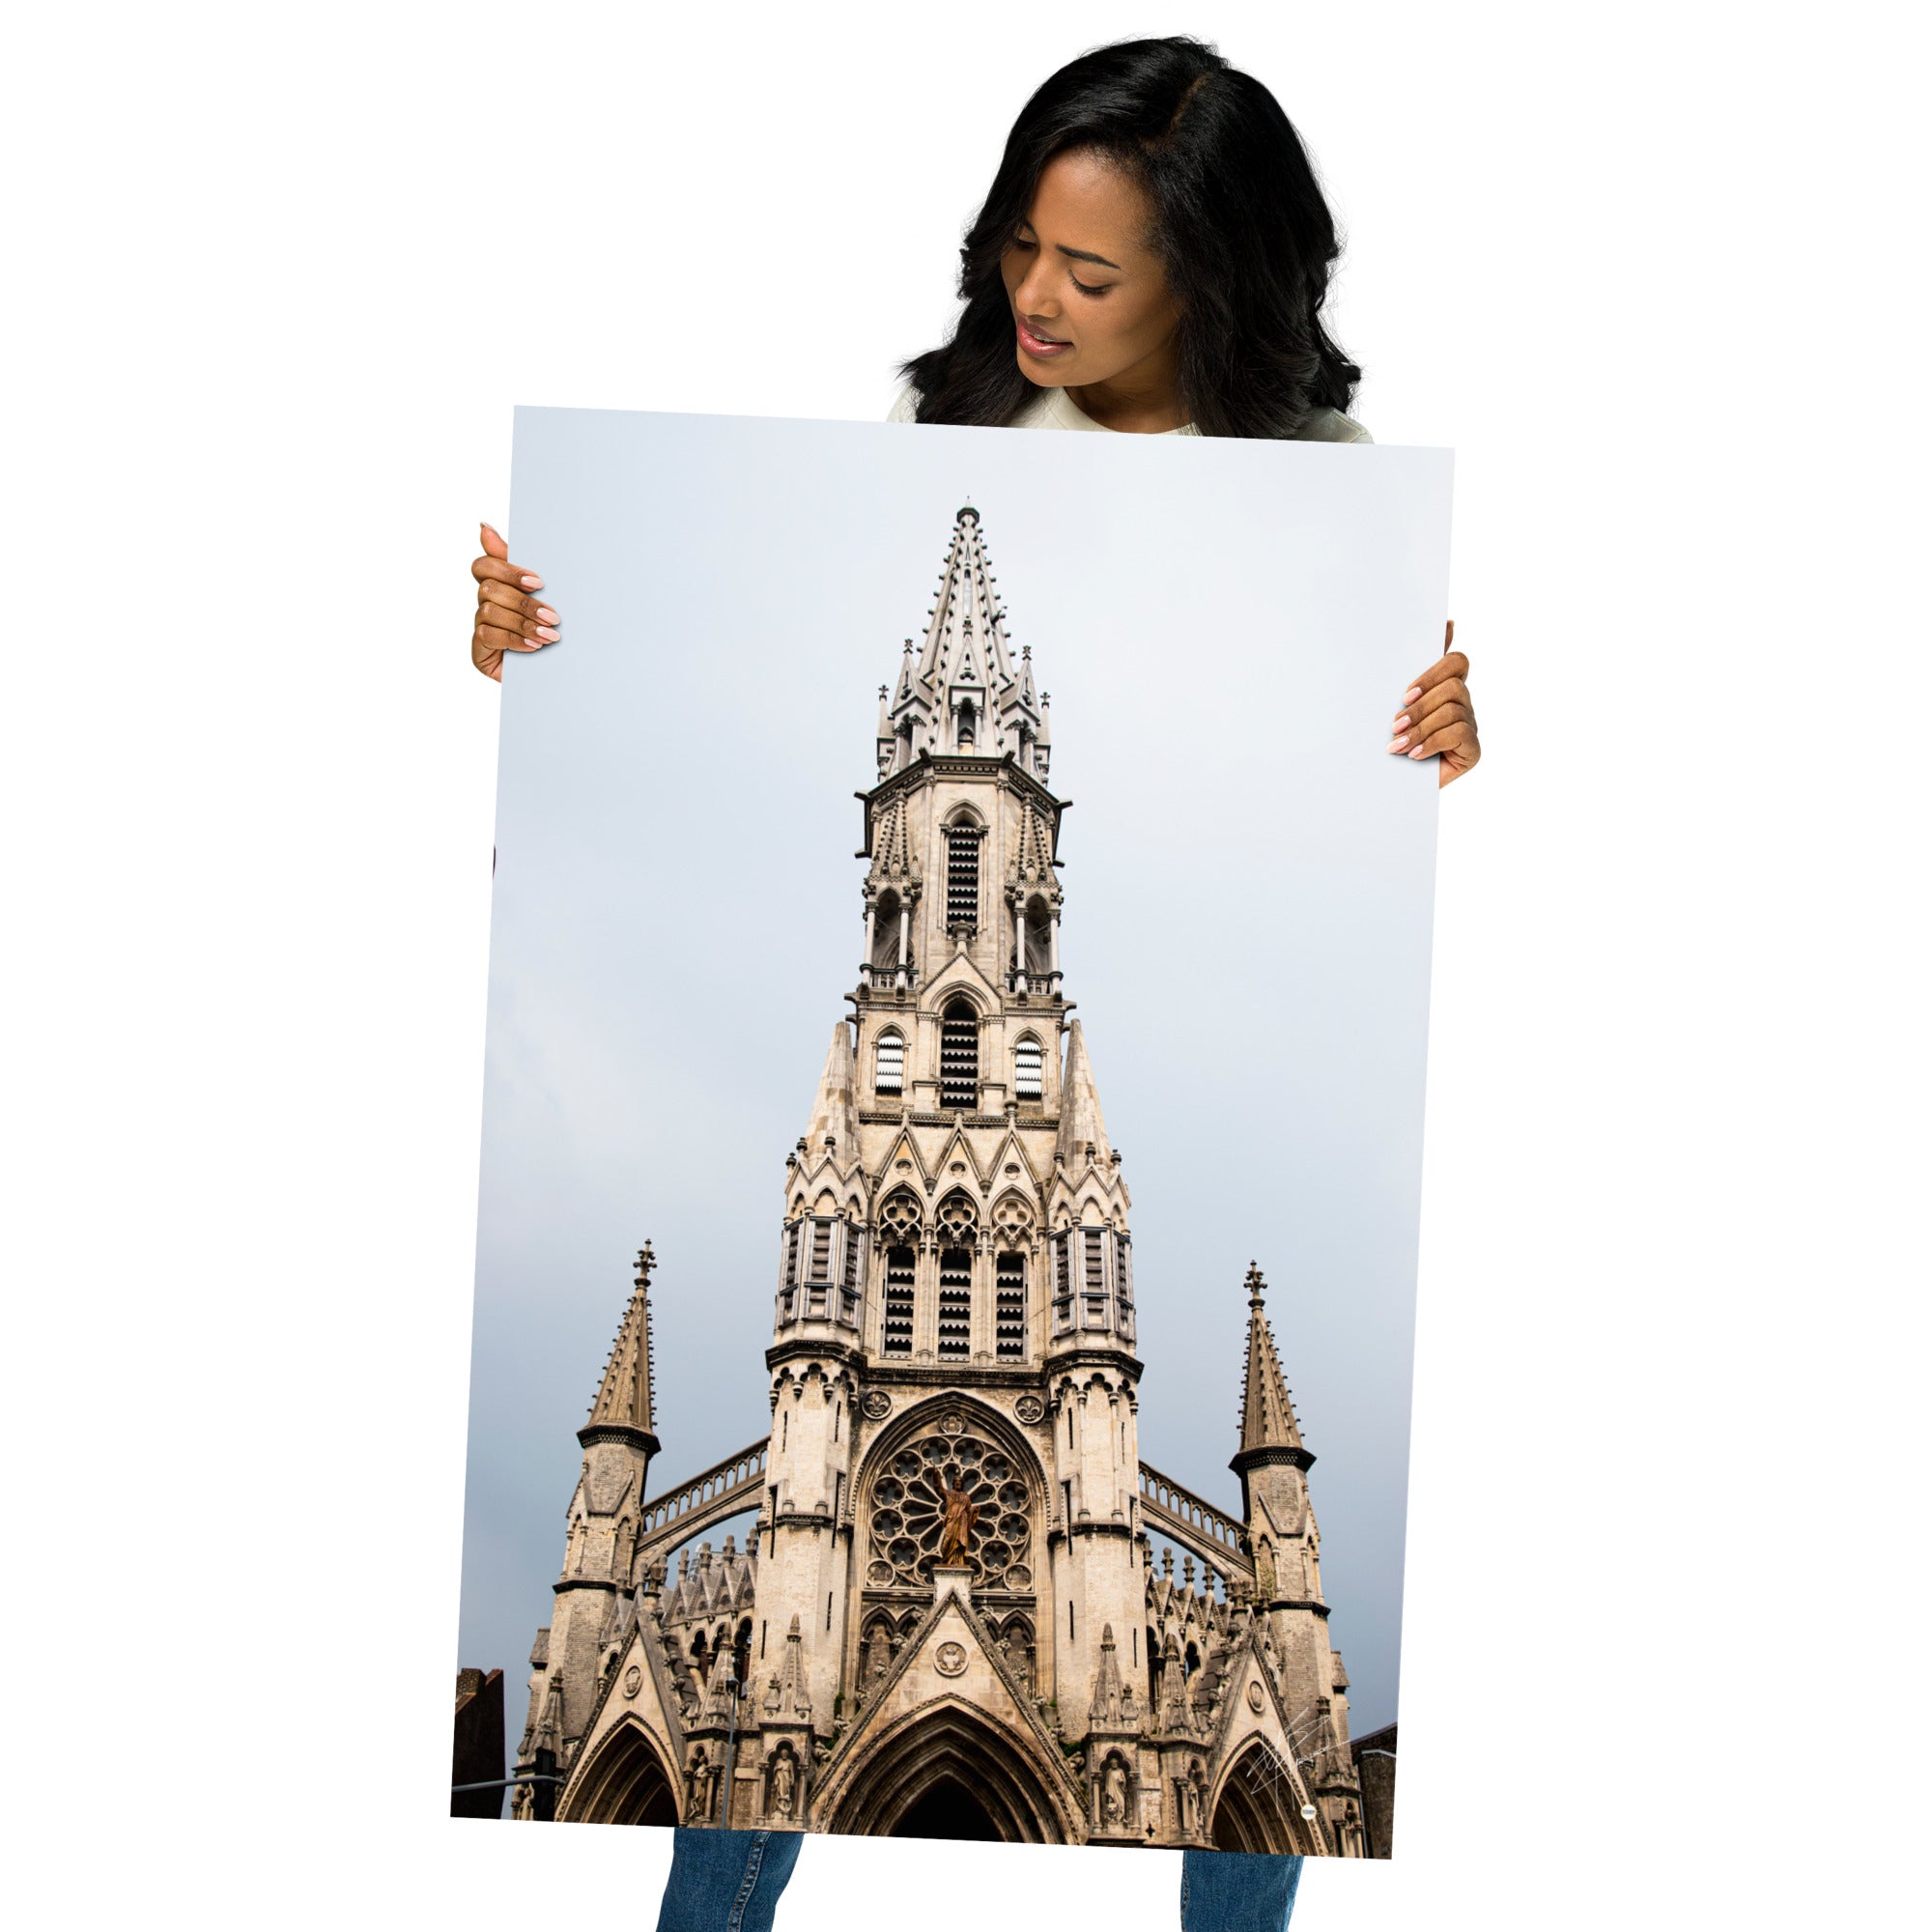 Photographie mettant en avant la face avant de l'Église catholique du Sacré-Cœur-de-Jésus à Lille, avec une attention particulière aux détails architecturaux, évoquant sa grandeur et sa beauté intemporelle.